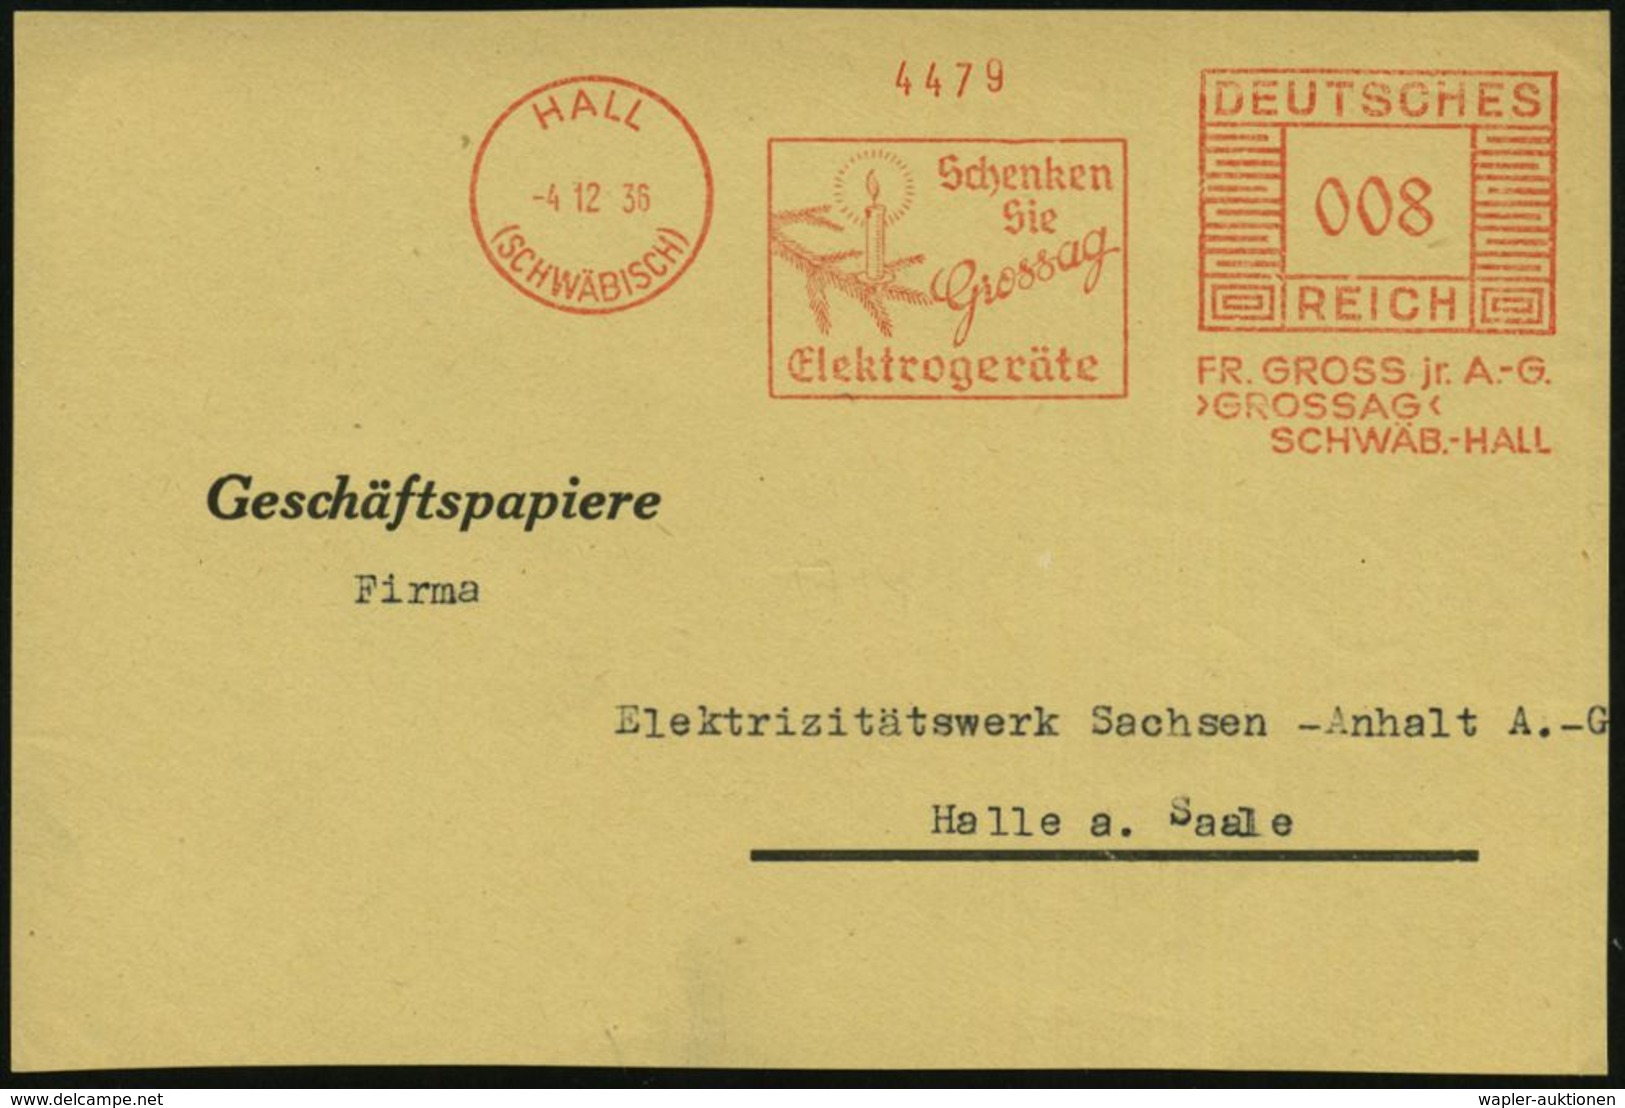 HALL/ (SCHWÄBISCH)/ Schenken/ Sie/ Grossag/ Elektrogeräte/ FT.GROSS Jr.A.-G. 1936 (4.12.) Seltener AFS = Zweig Mit Kerze - Noël